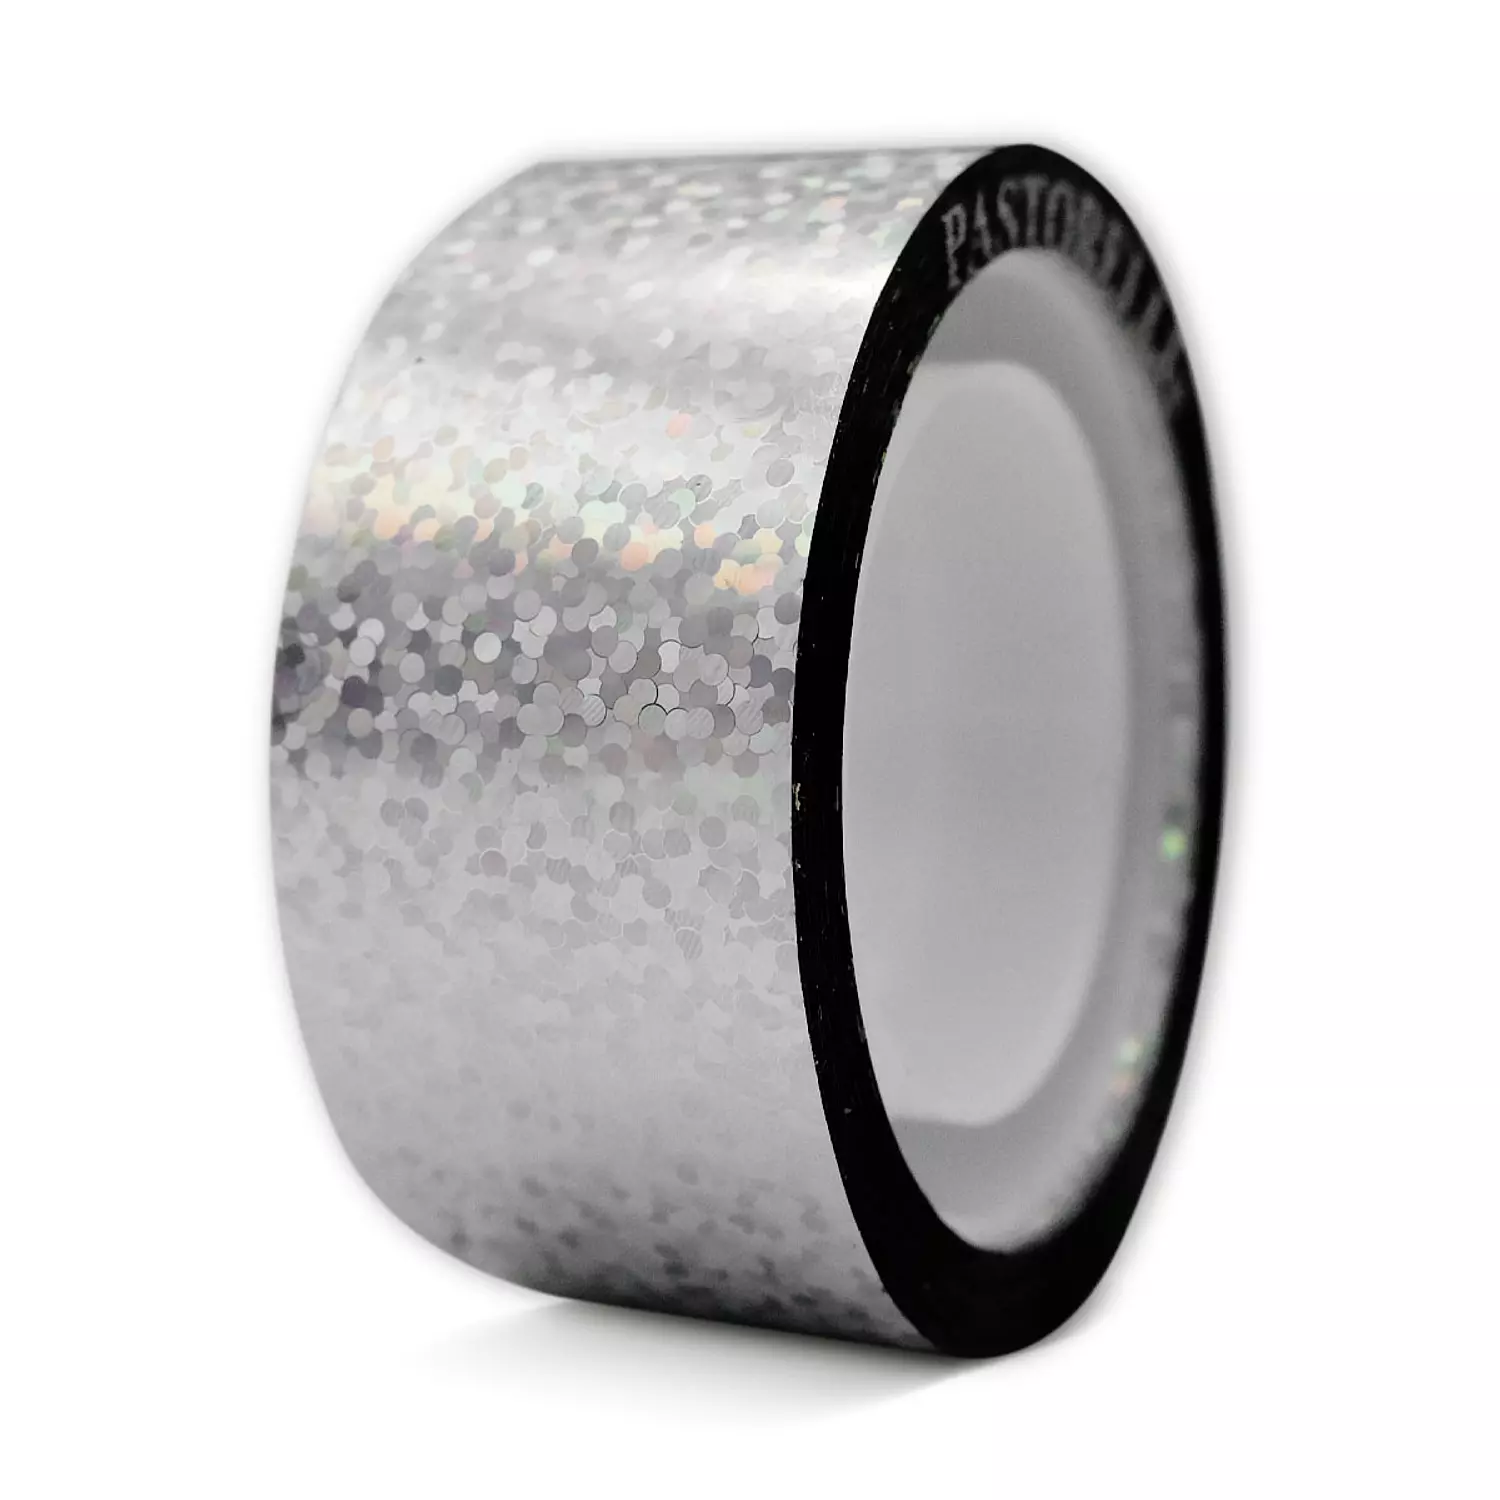 Pastorelli-Diamond adhesive tape 8